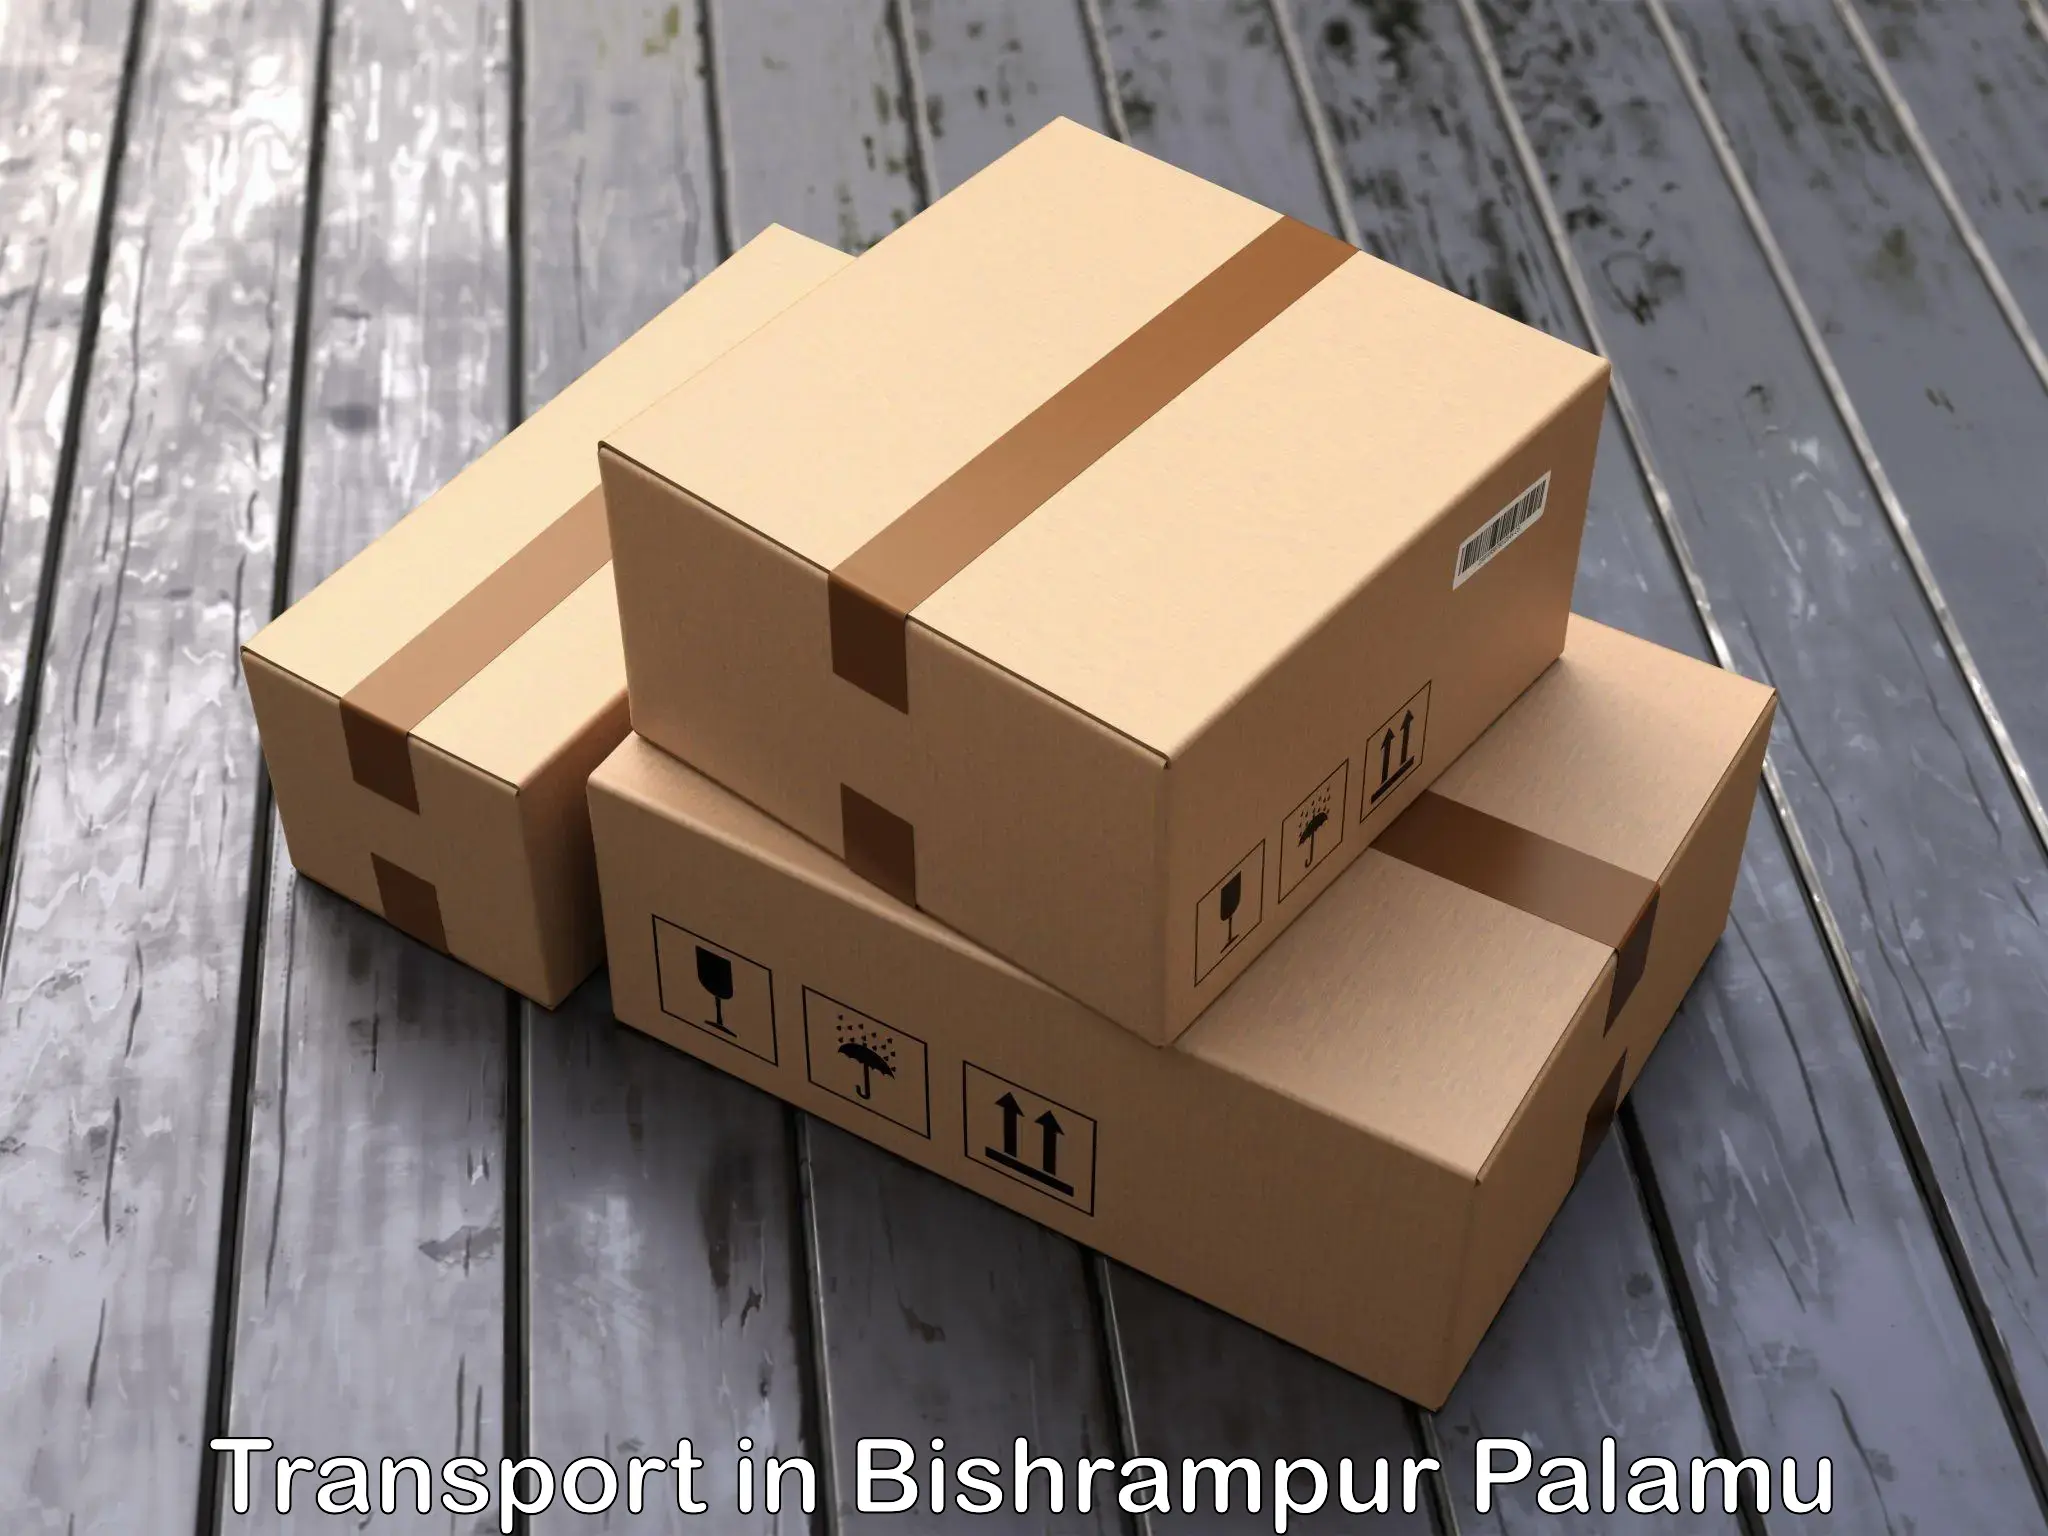 Land transport services in Bishrampur Palamu